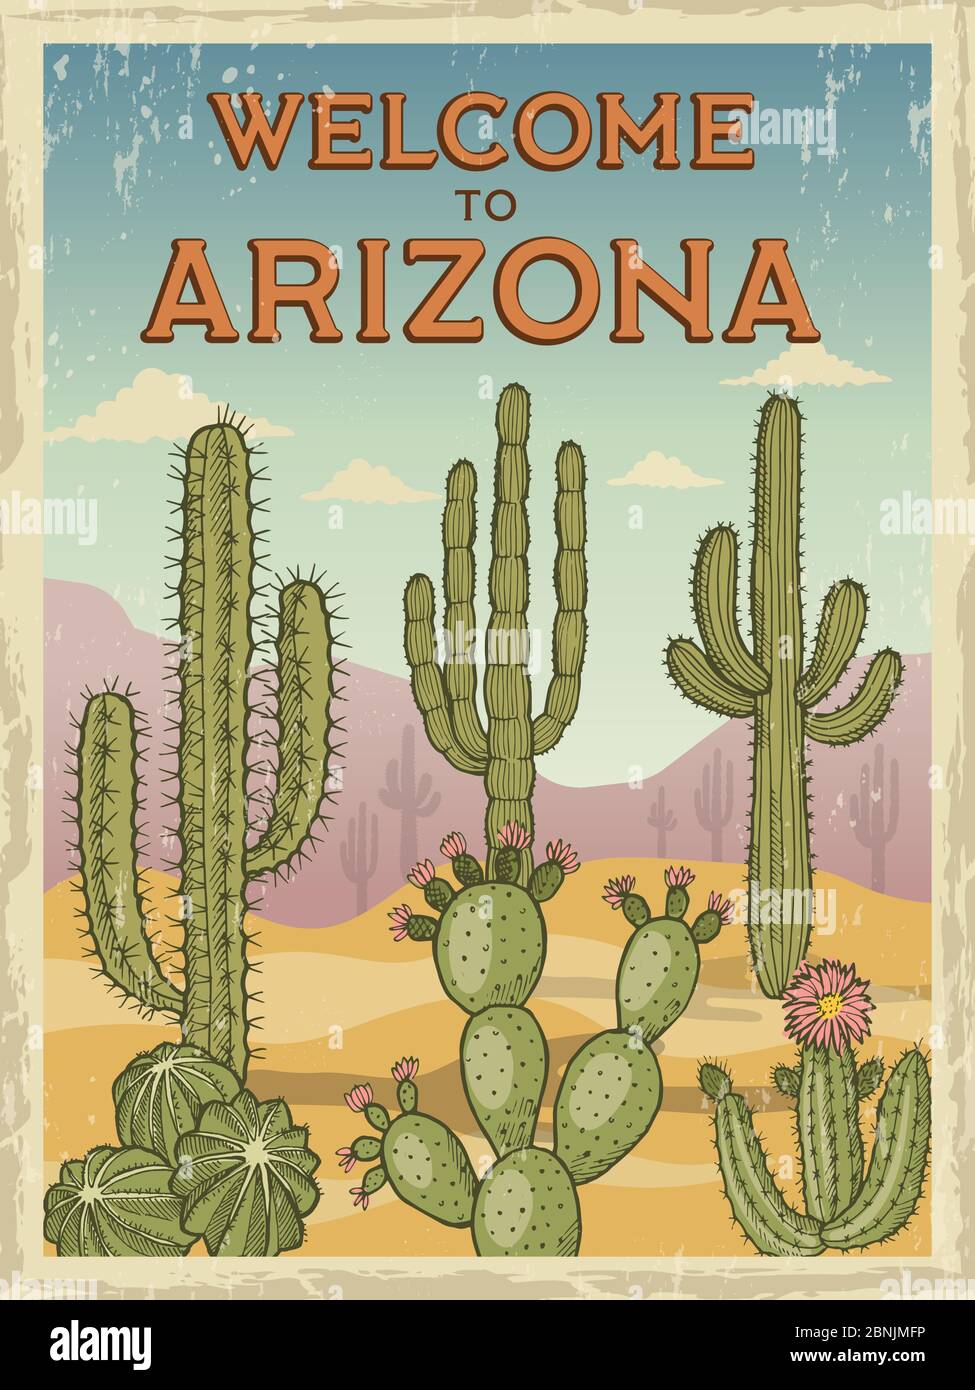 Modèle de design de poster rétro bienvenue en arizona. Illustrations de cactus sauvages Illustration de Vecteur